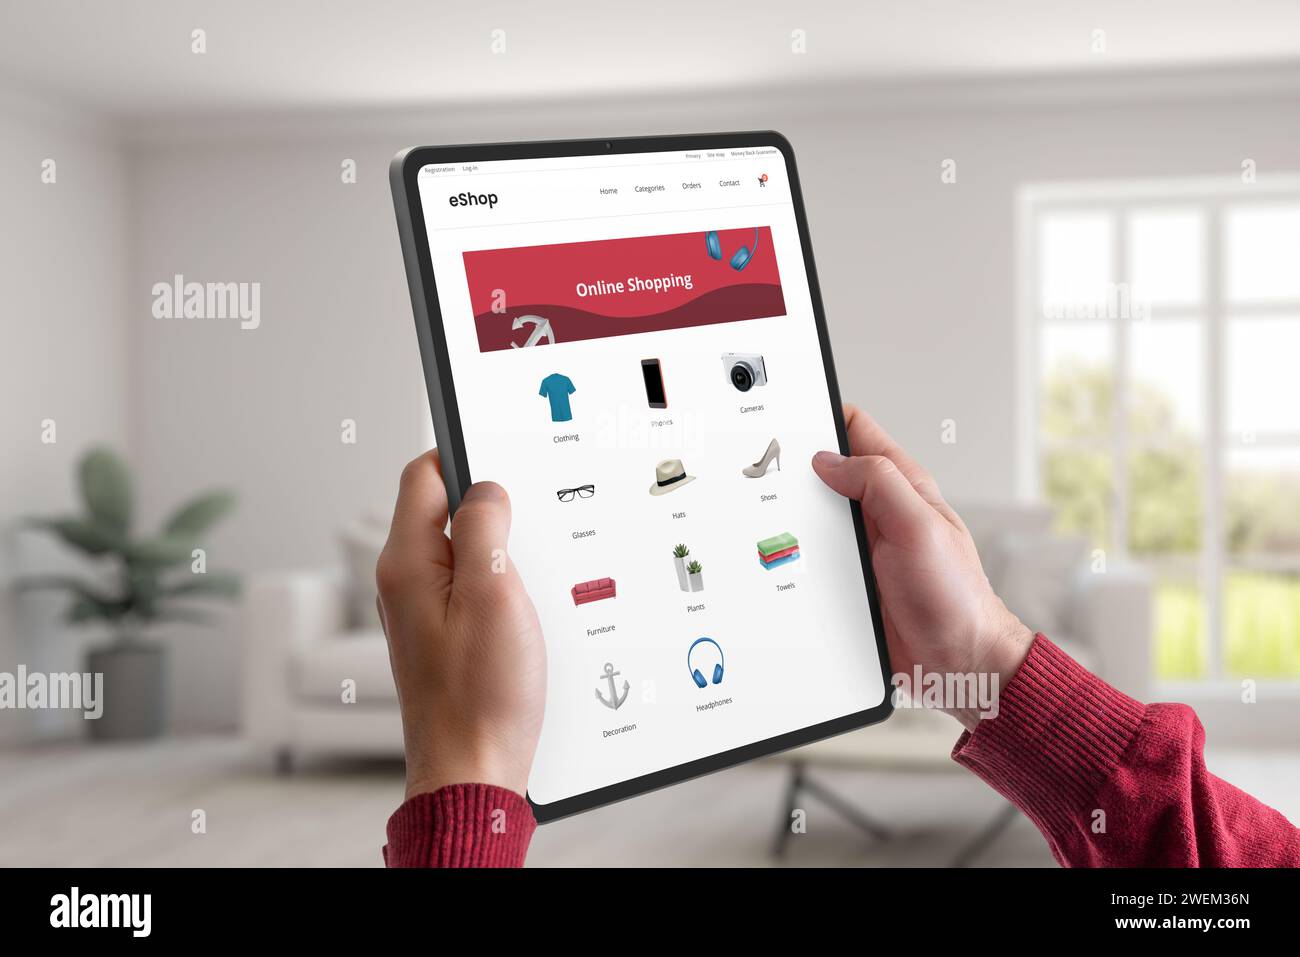 Halten Sie ein Tablet, das eine E-Commerce-Webseite mit Produktkategorien anzeigt. Konzept des bequemen Online-Shoppings von zu Hause aus, das nahtlose und Stockfoto